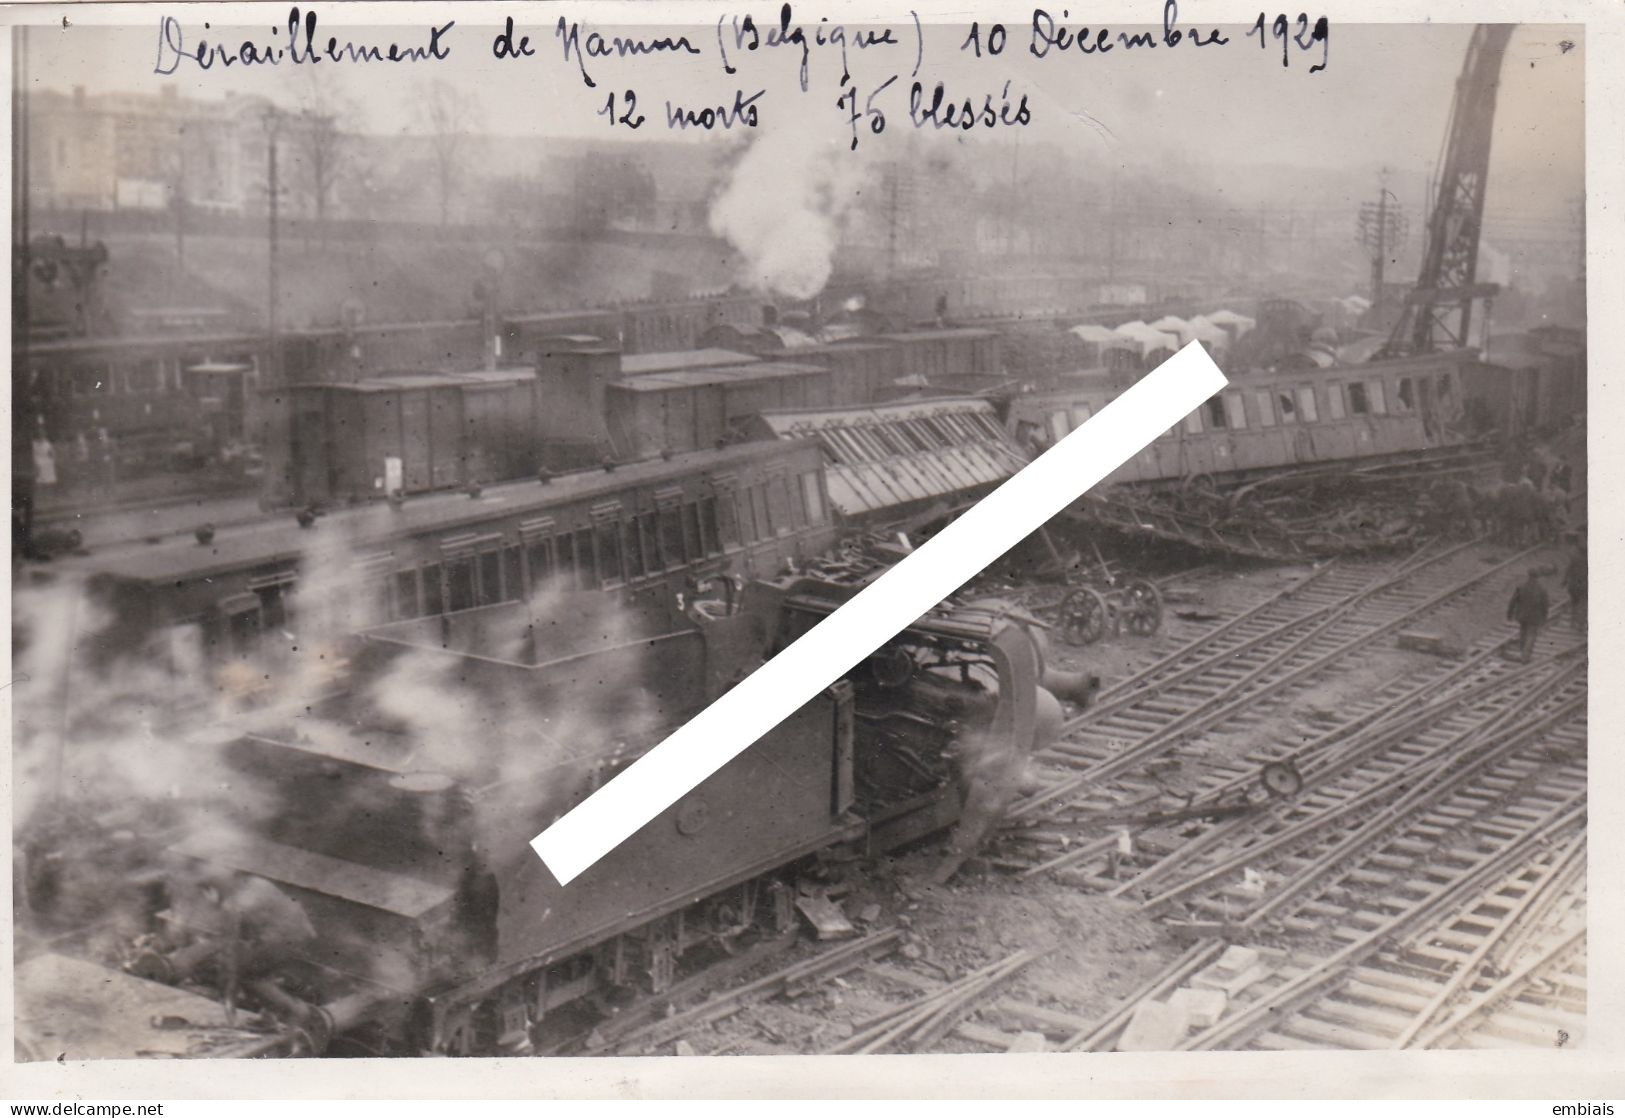 BELGIQUE NAMUR ACCIDENT CHEMIN DE FER 10 Décembre 1929 - Photo Originale D'un Déraillement 12 Morts, 75 Blessés - Treinen